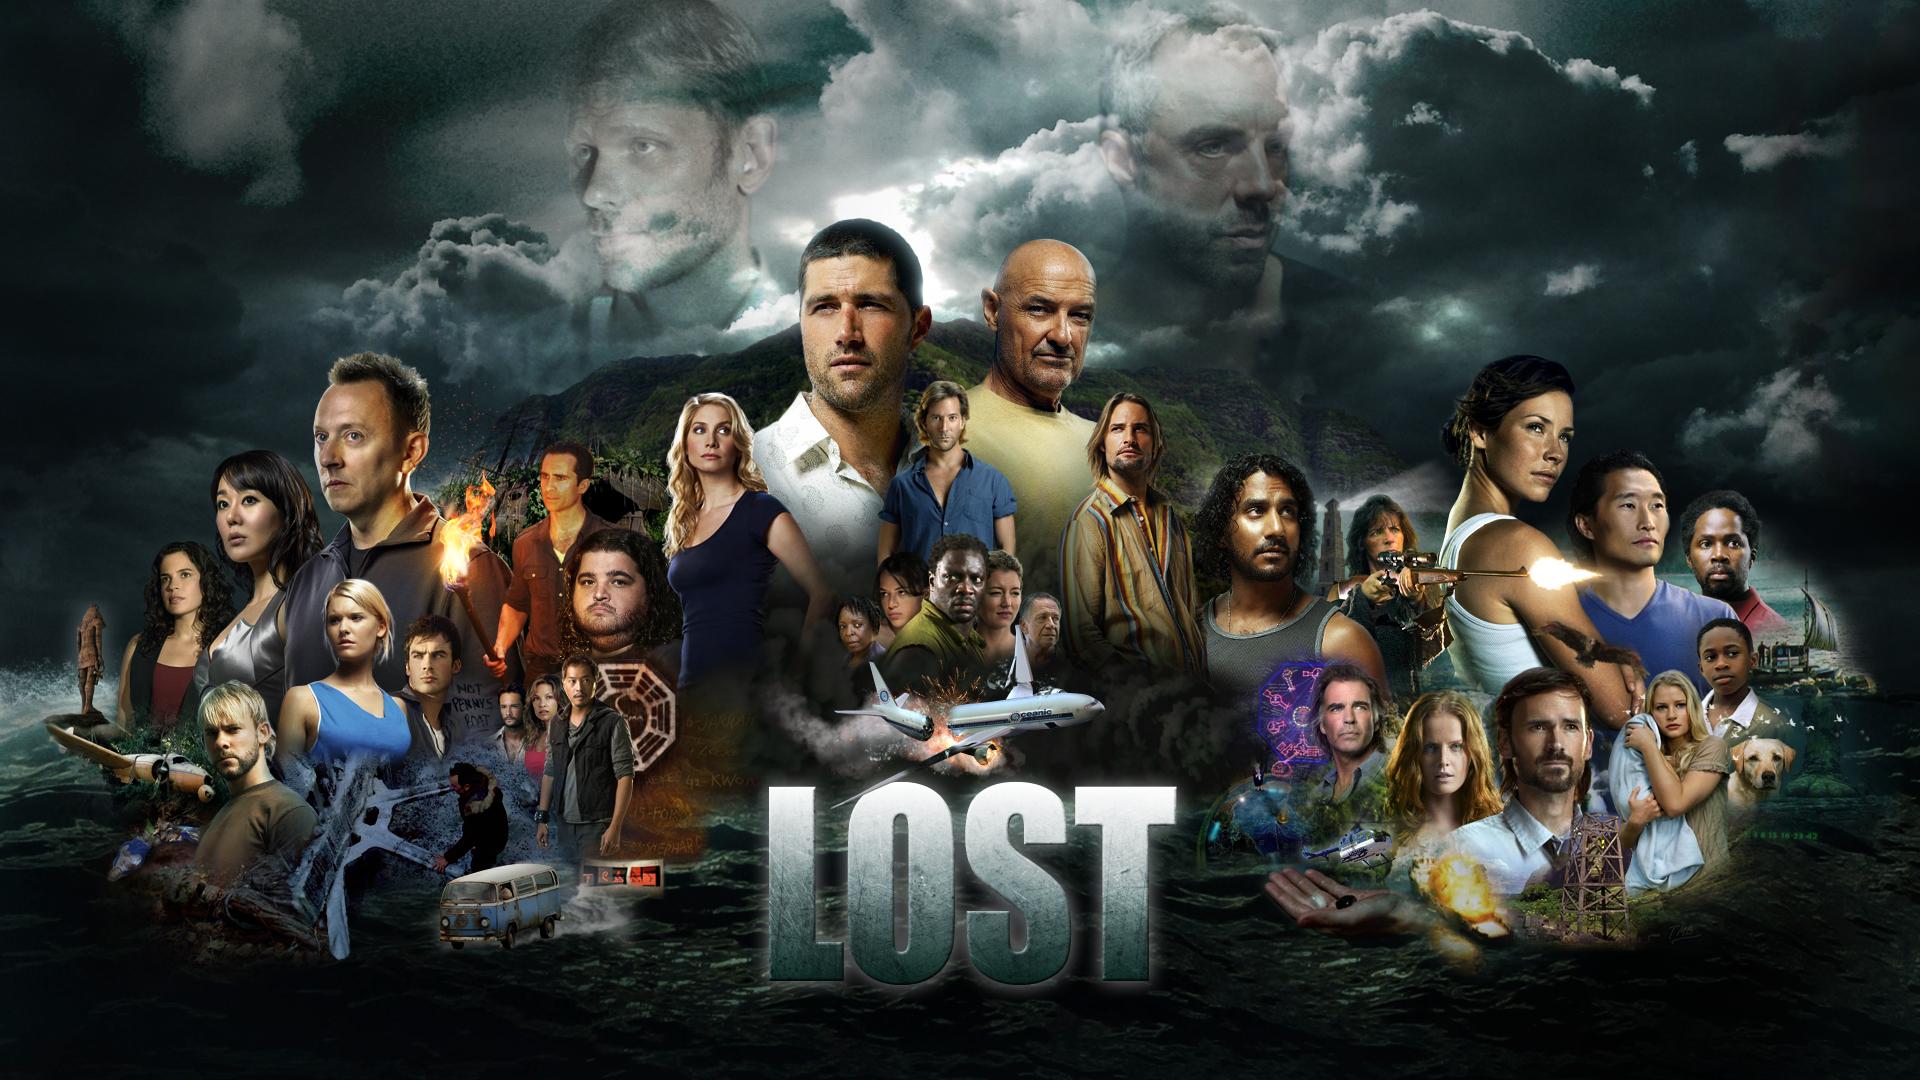 Lost : Les Disparus, c’est un chef d’oeuvre